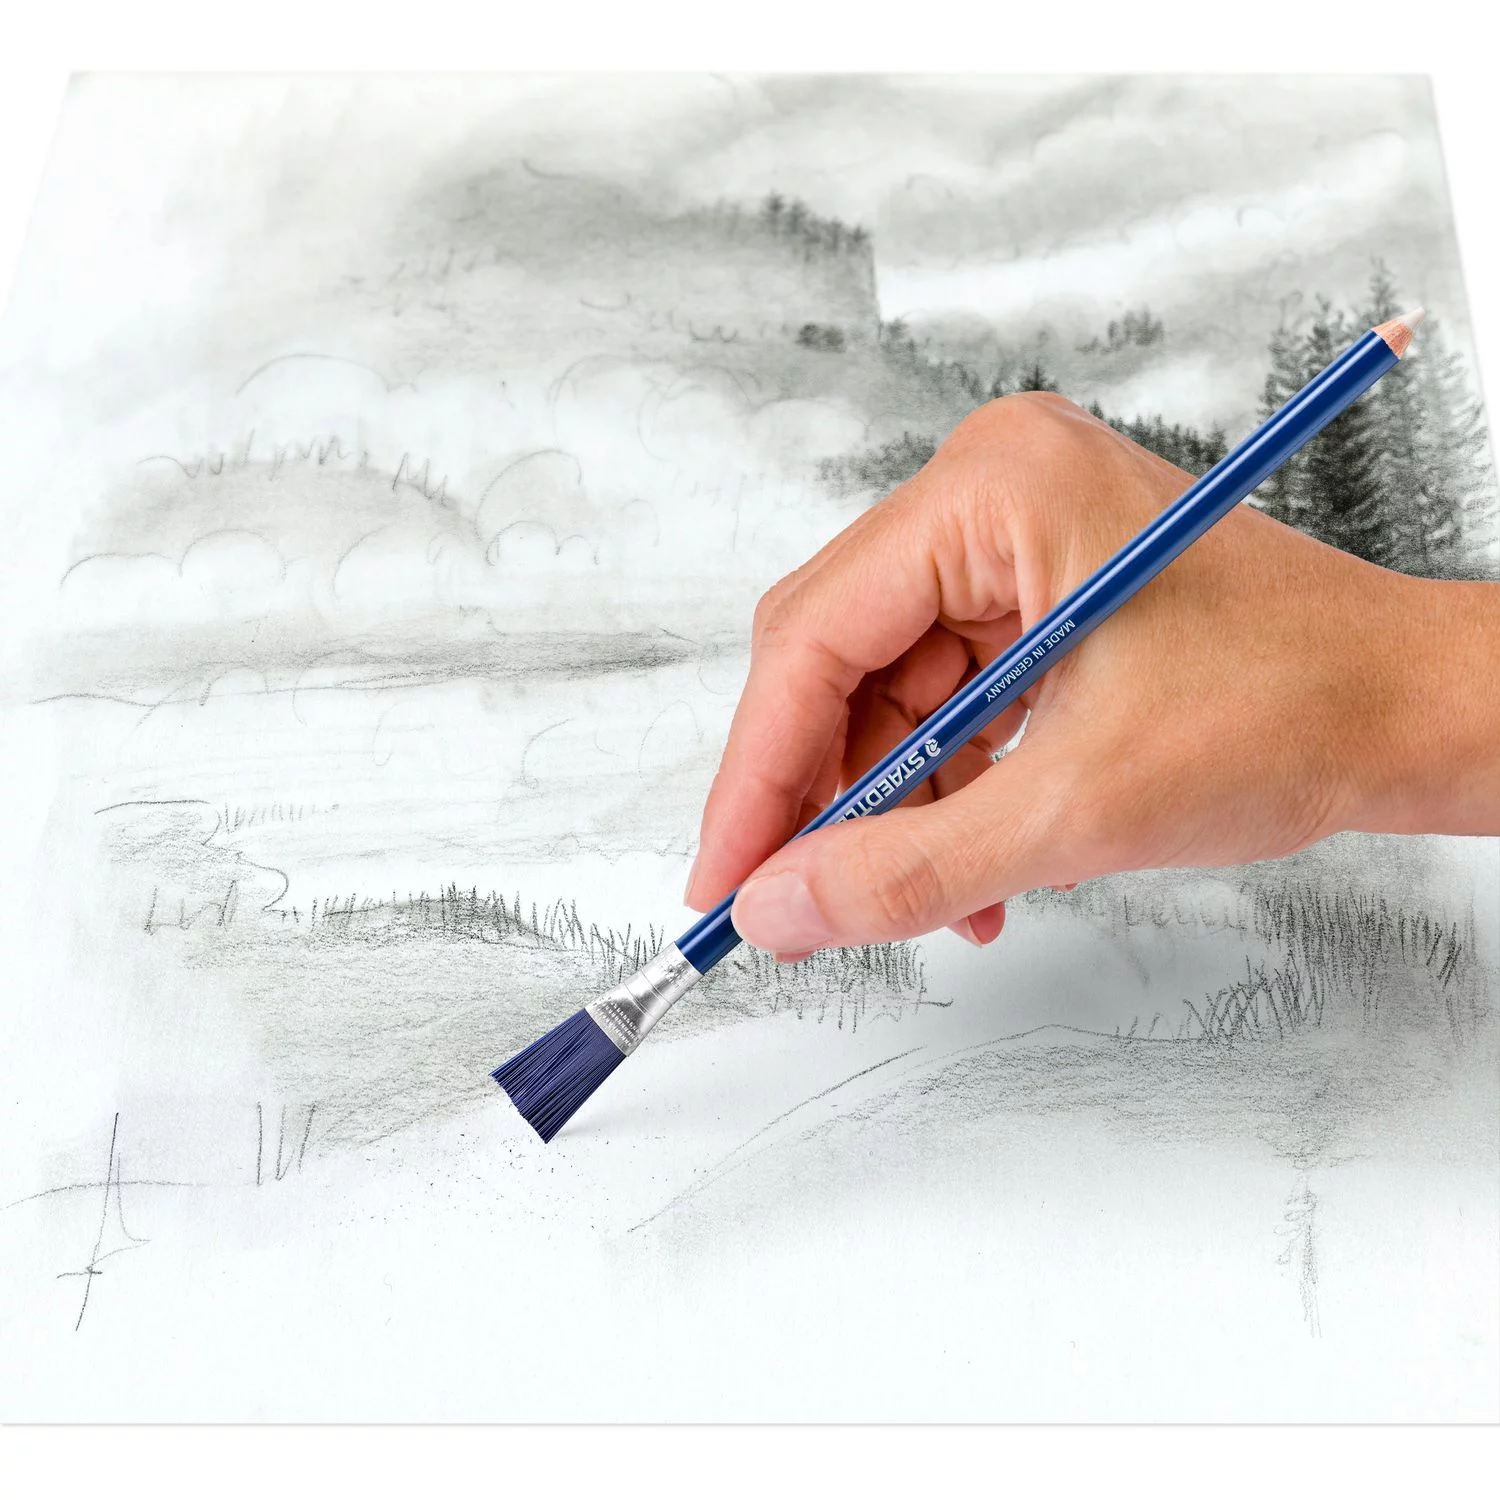 Staedtler Eraser Pencil with Brush - Wyndham Art Supplies